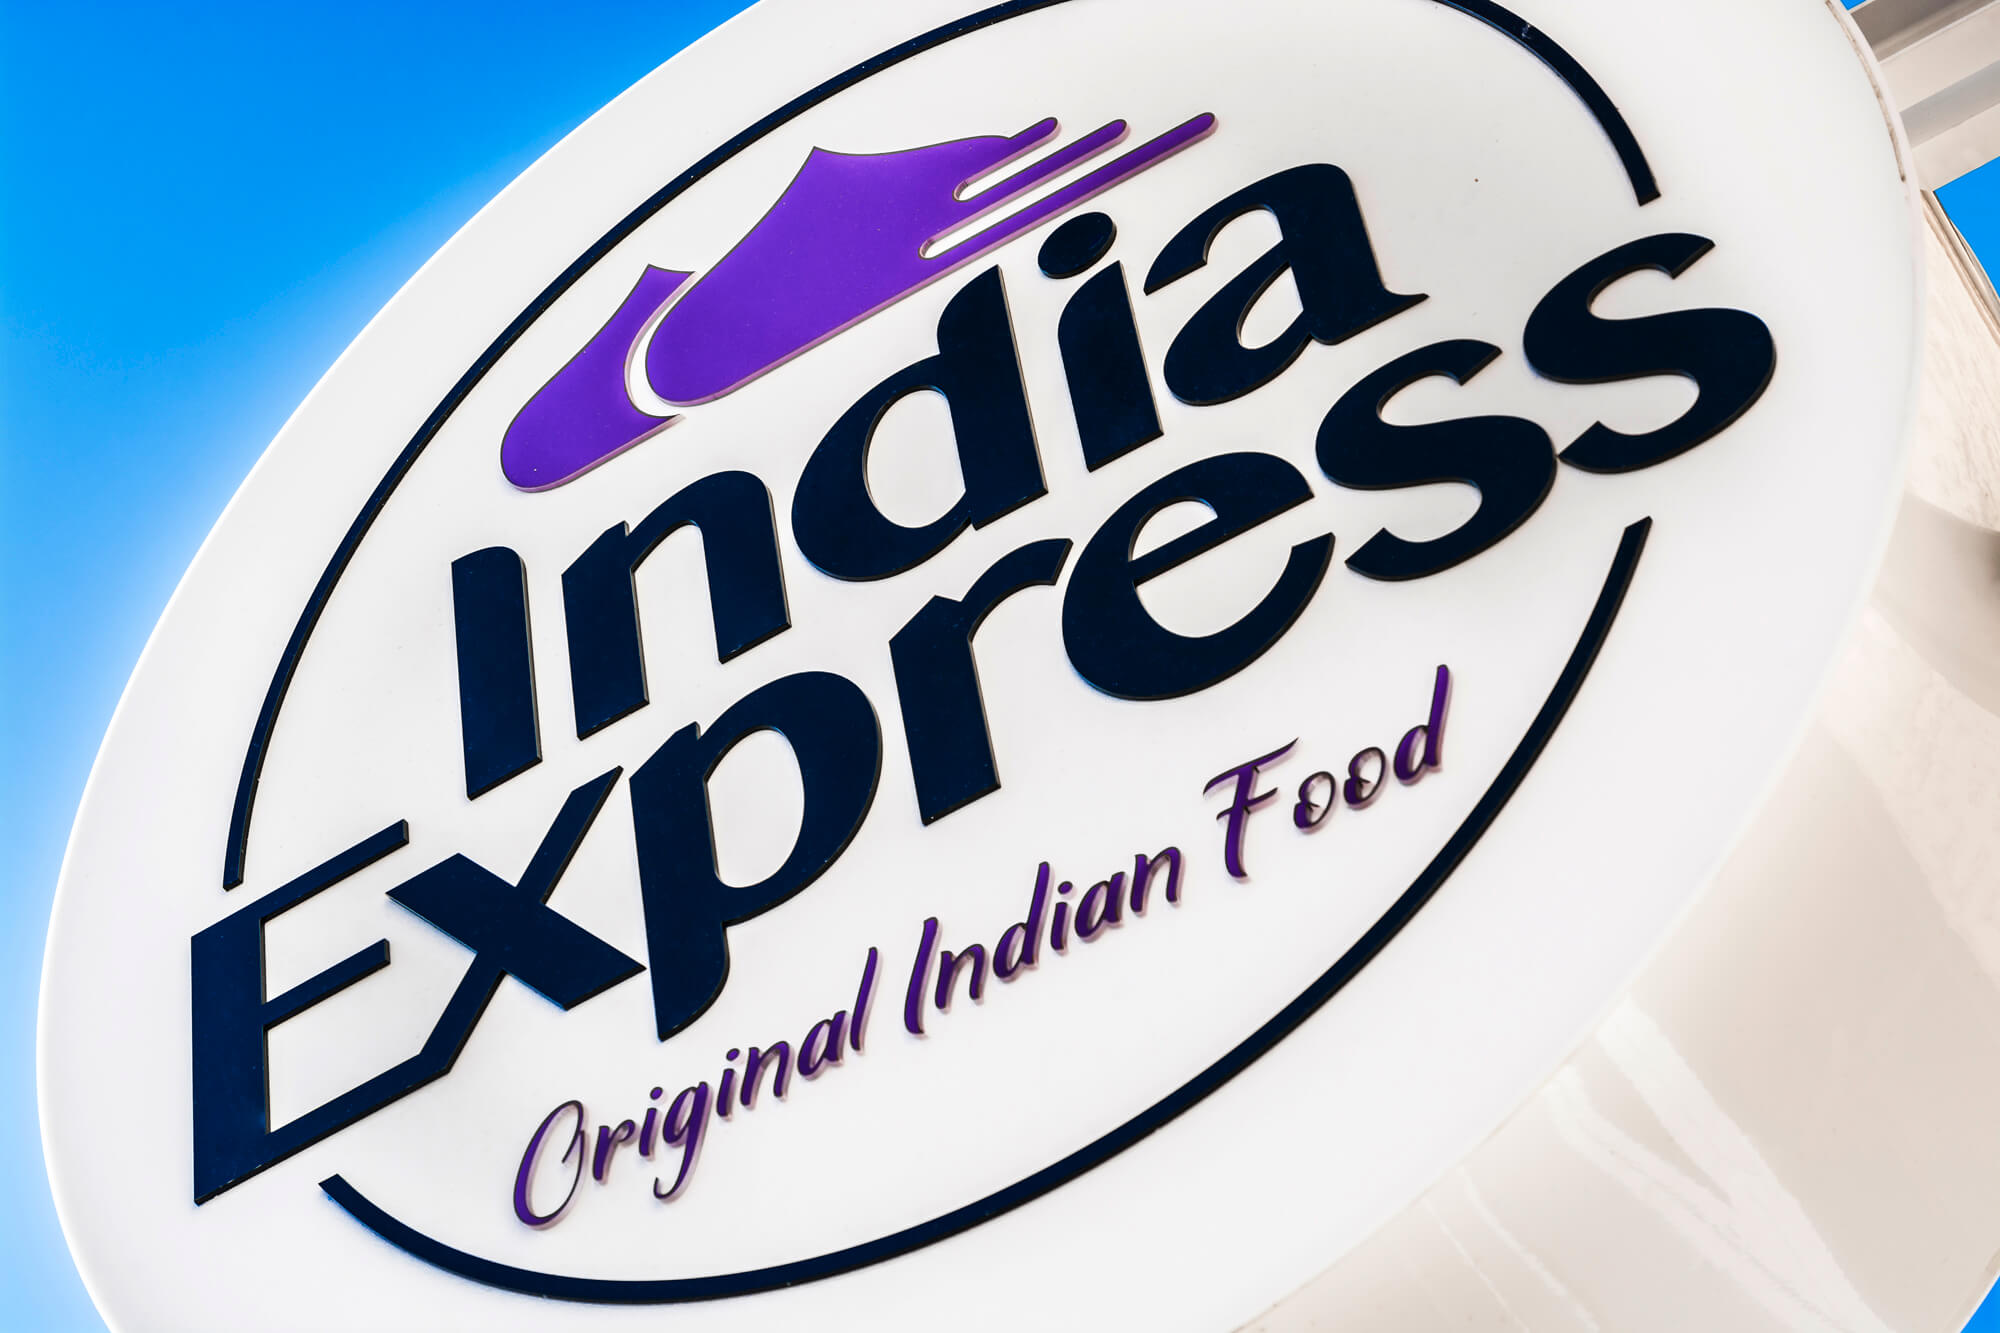 India Express - India Express - logo della società, semaforo pubblicitario appeso accanto all'ingresso